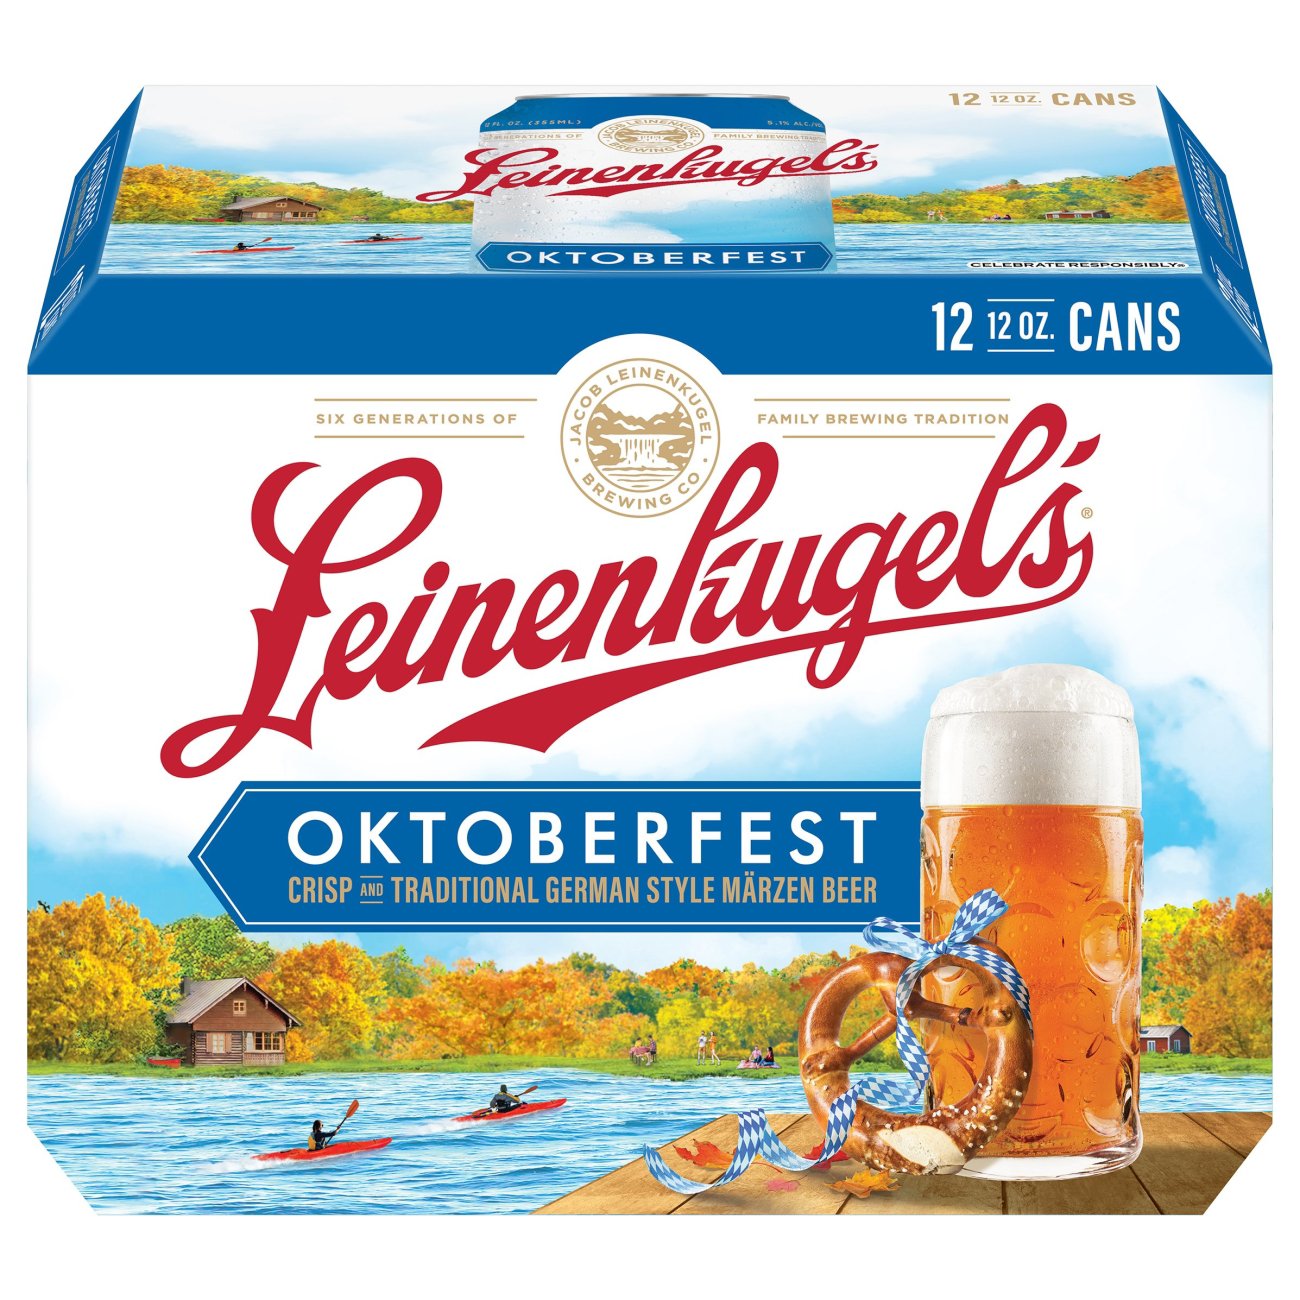 Leinenkugel's Oktoberfest Seasonal Beer 12 pk Cans Shop Beer at HEB